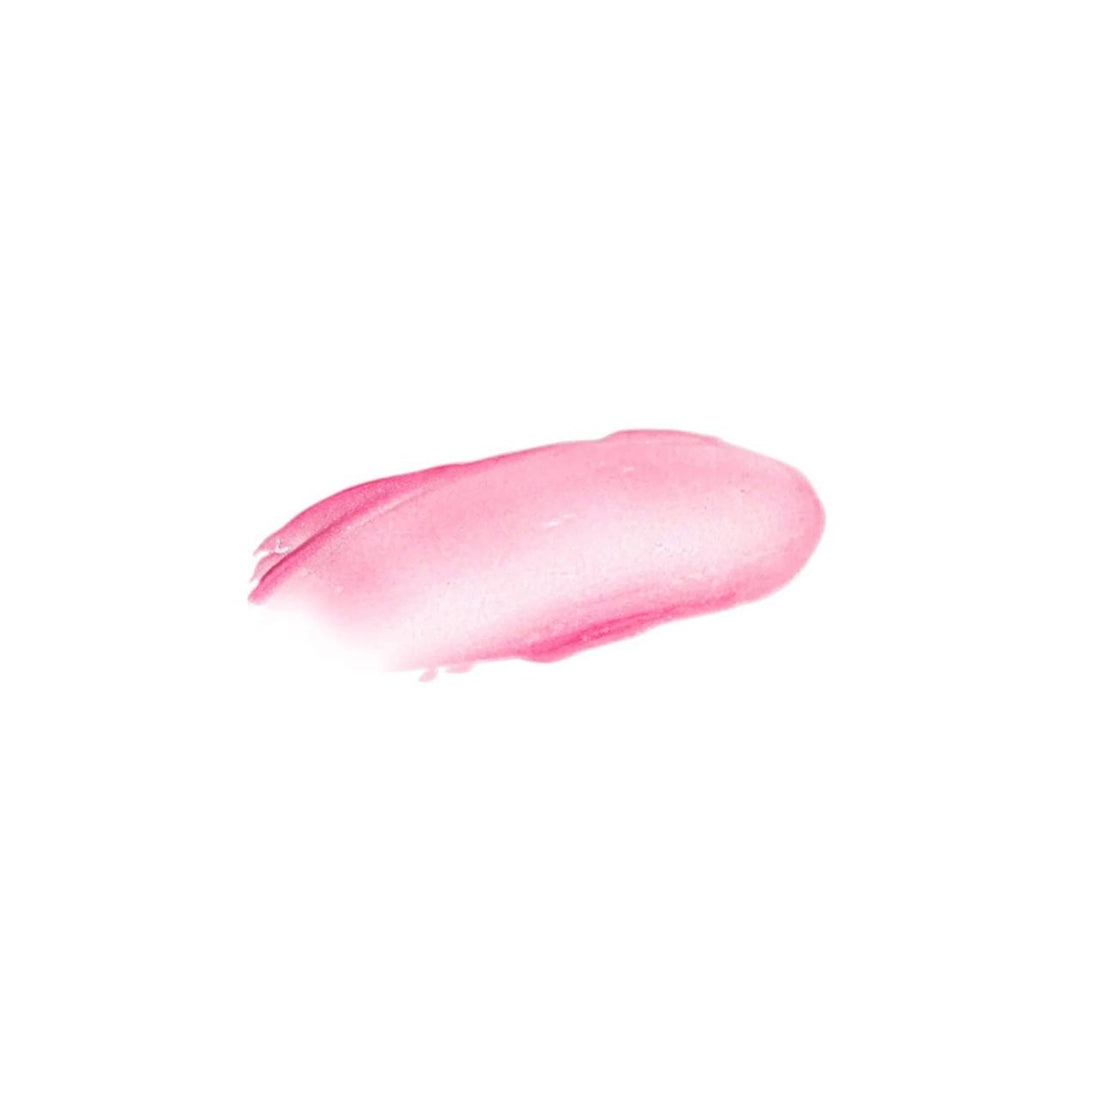 Sheer Pink Lip Whip